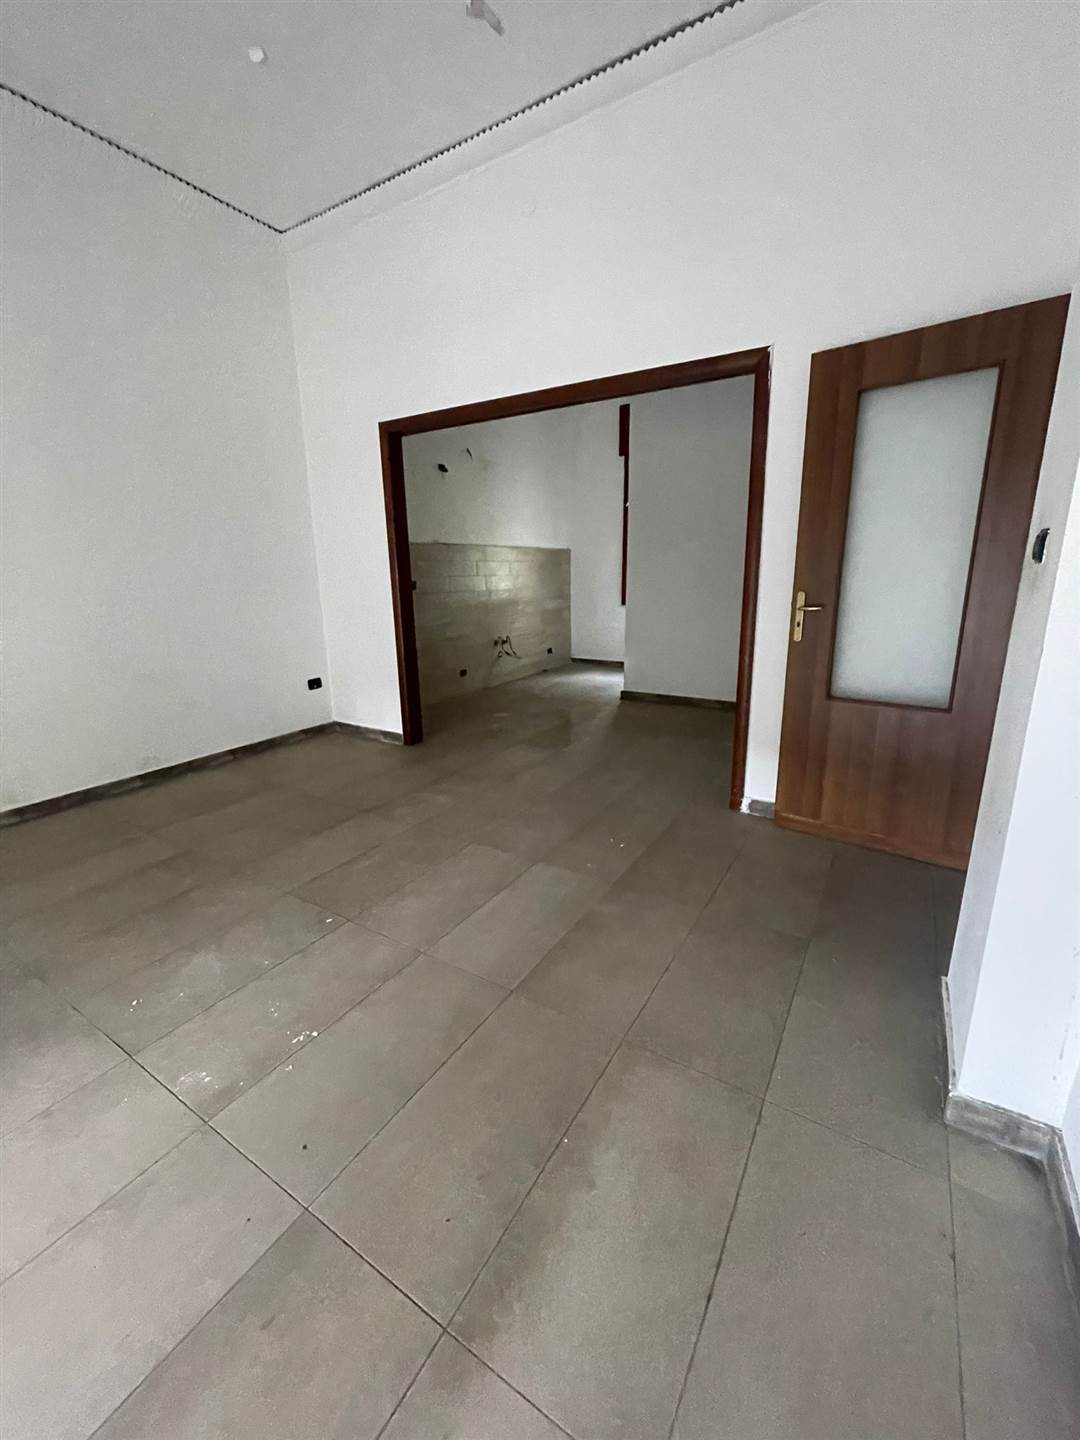 Appartamento in affitto a San Giuseppe Vesuviano, 3 locali, prezzo € 600 | PortaleAgenzieImmobiliari.it